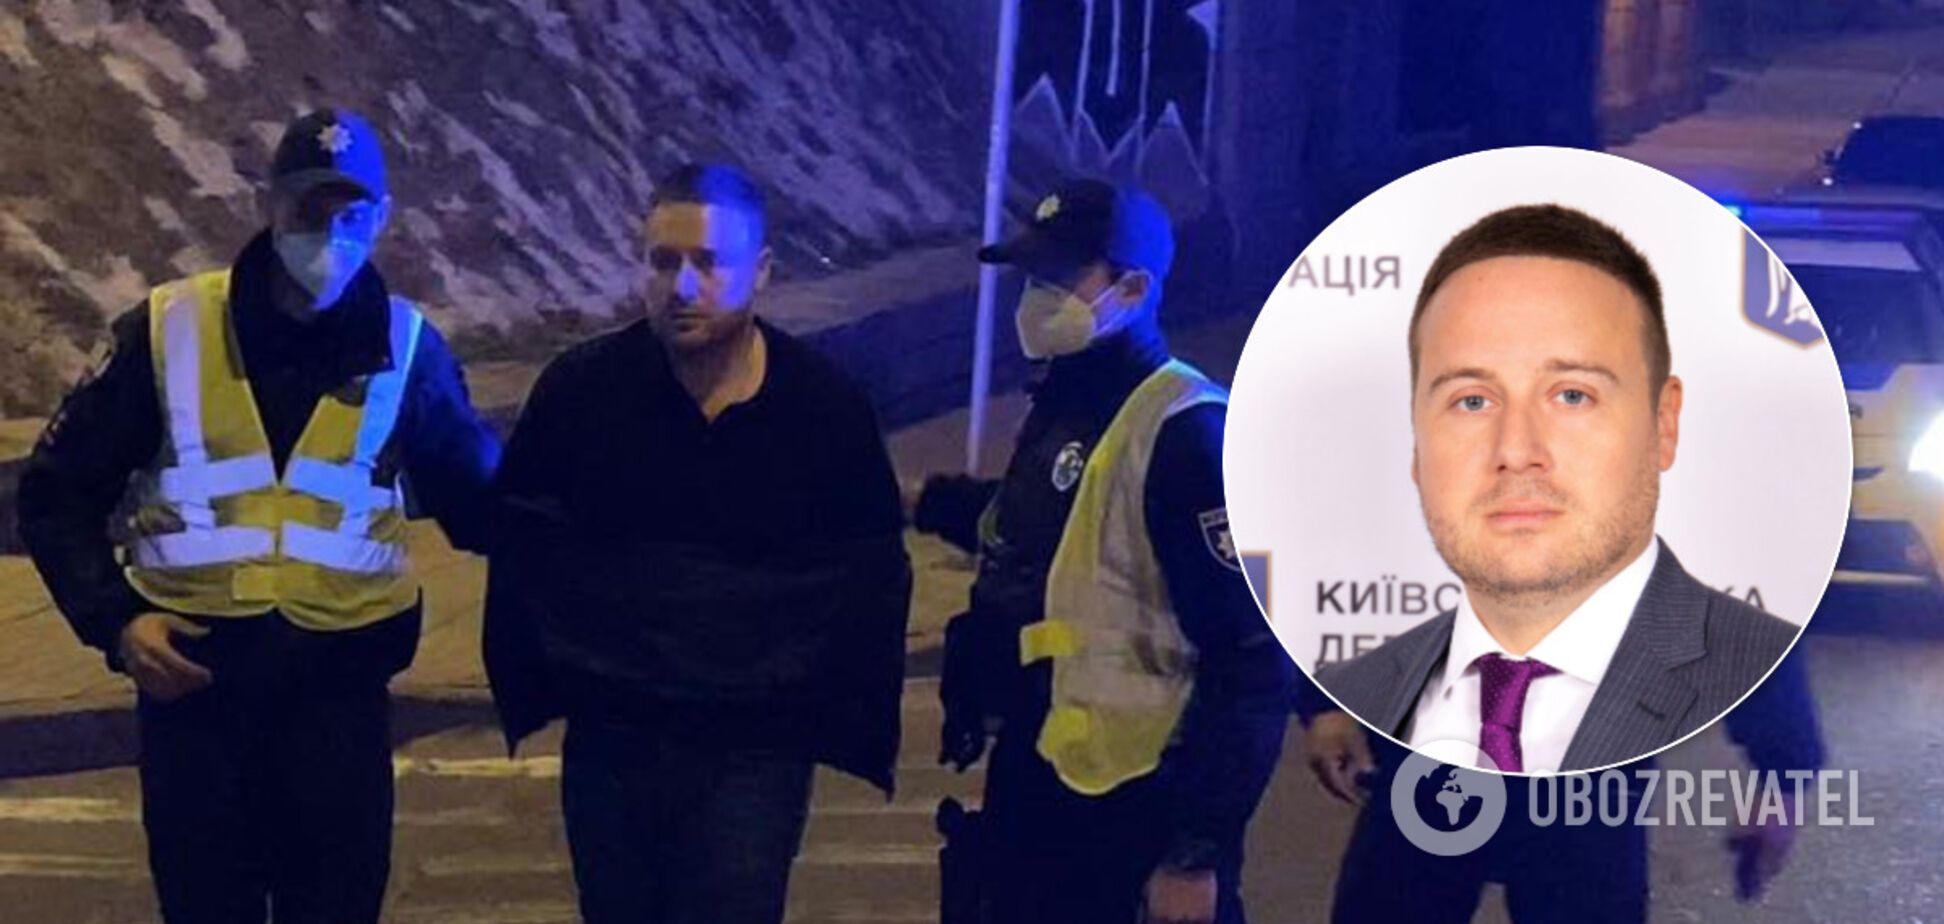 Топчиновник КМДА влаштував бійку з поліцейськими у Києві і був з ганьбою звільнений. Відео